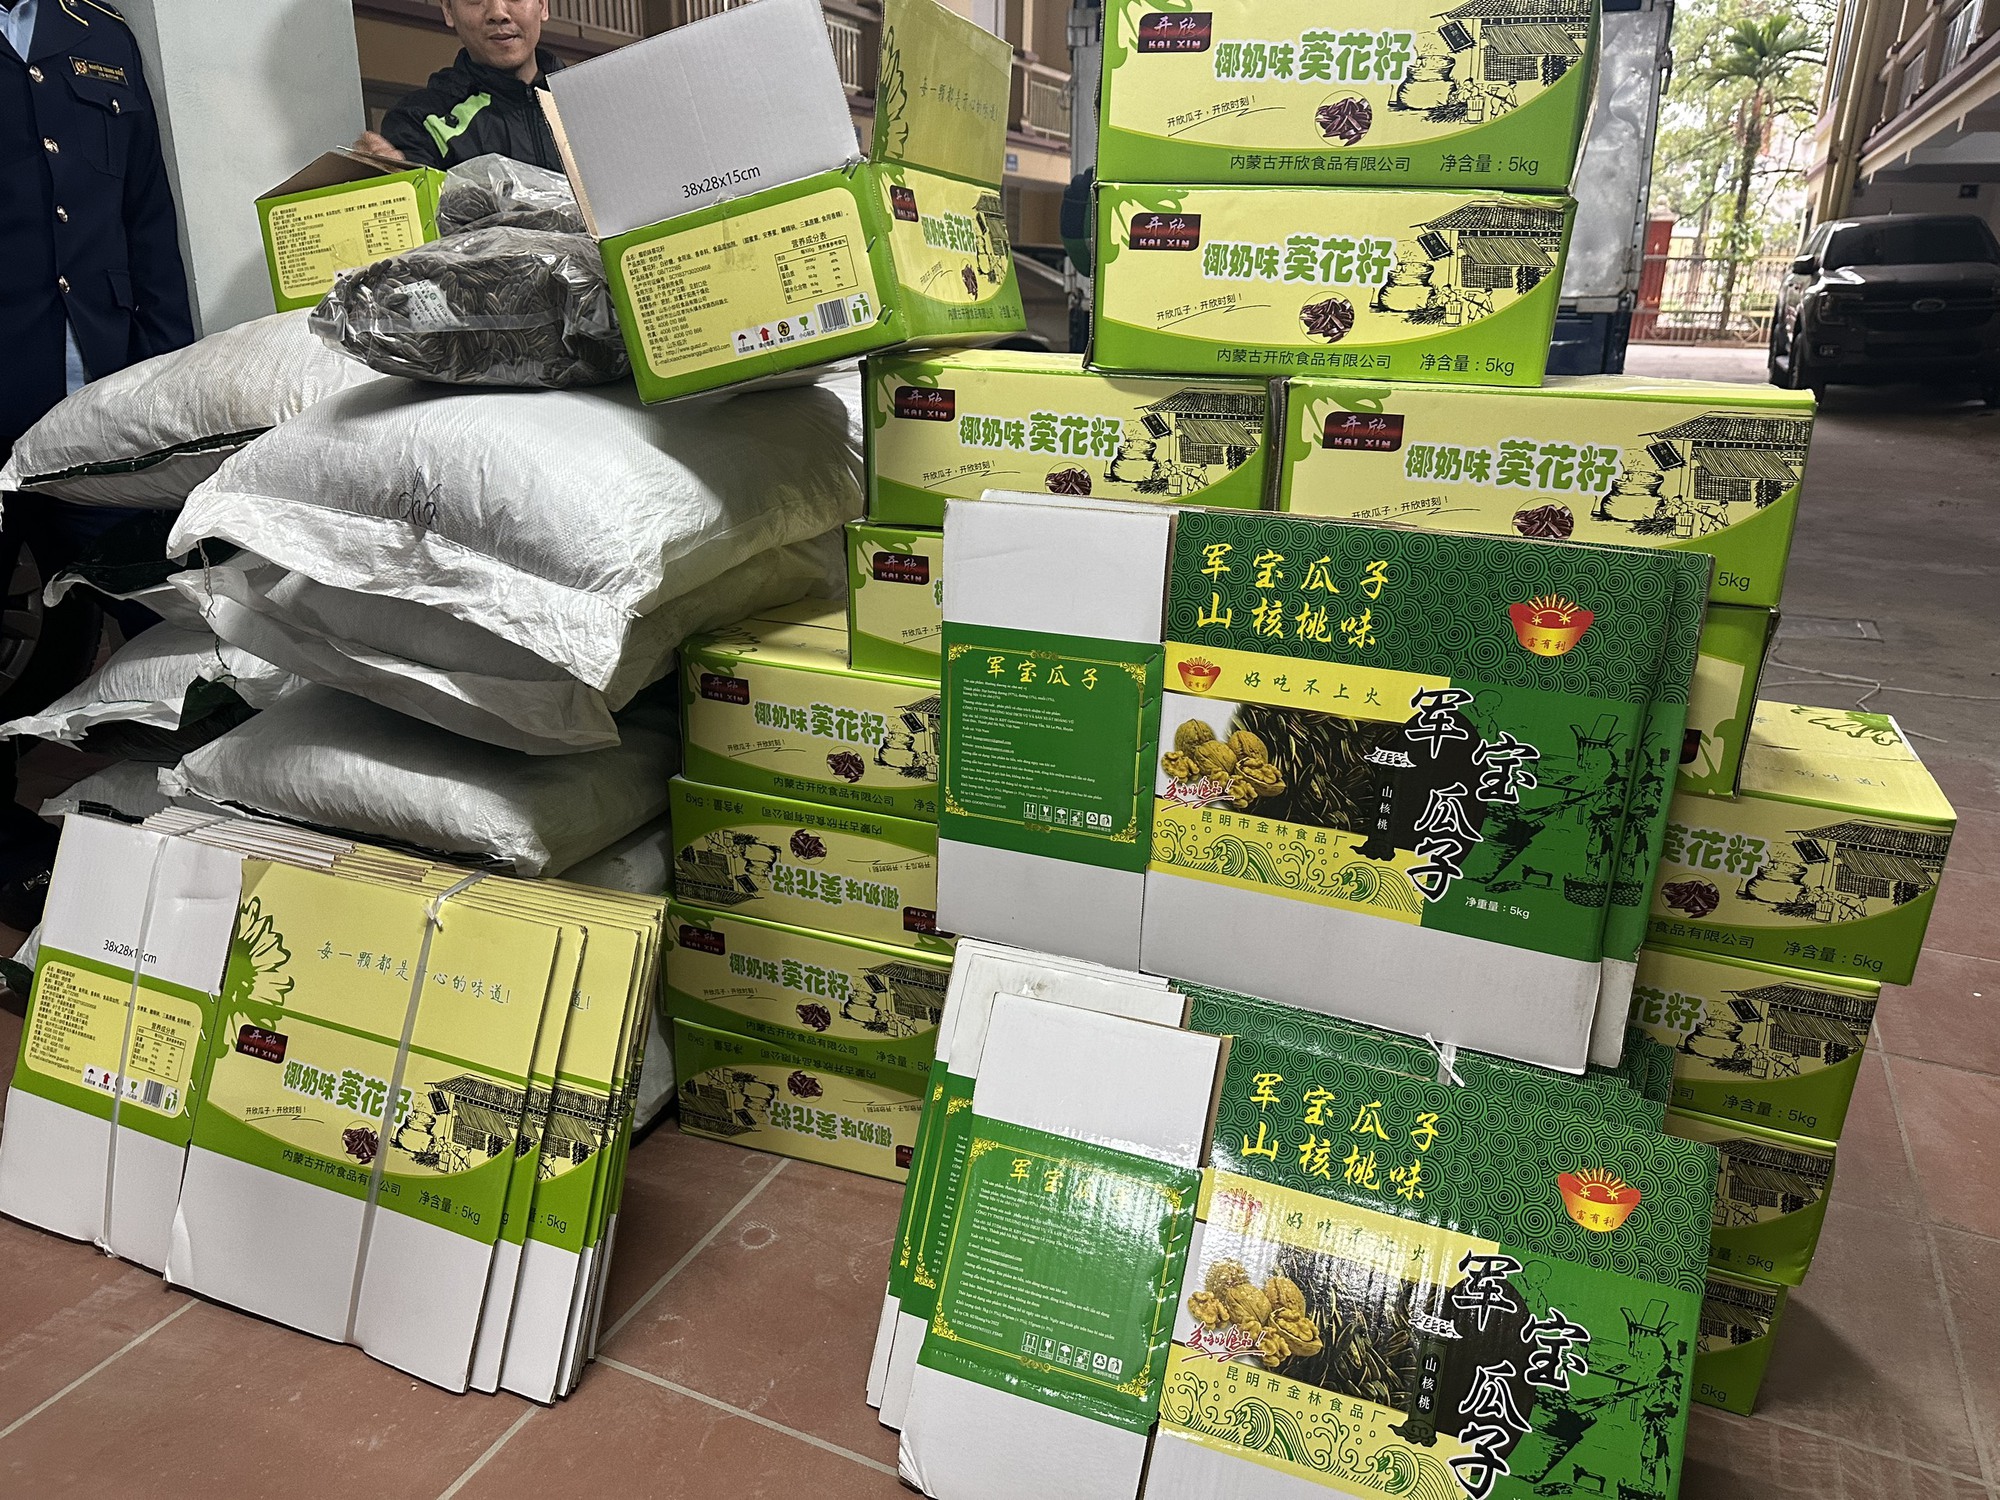 'Tóm gọn' nhiều thùng killogram hướng dương nhập lậu 'suýt' được biến hoá thành hàng sản xuất tại Việt Nam - Ảnh 2.